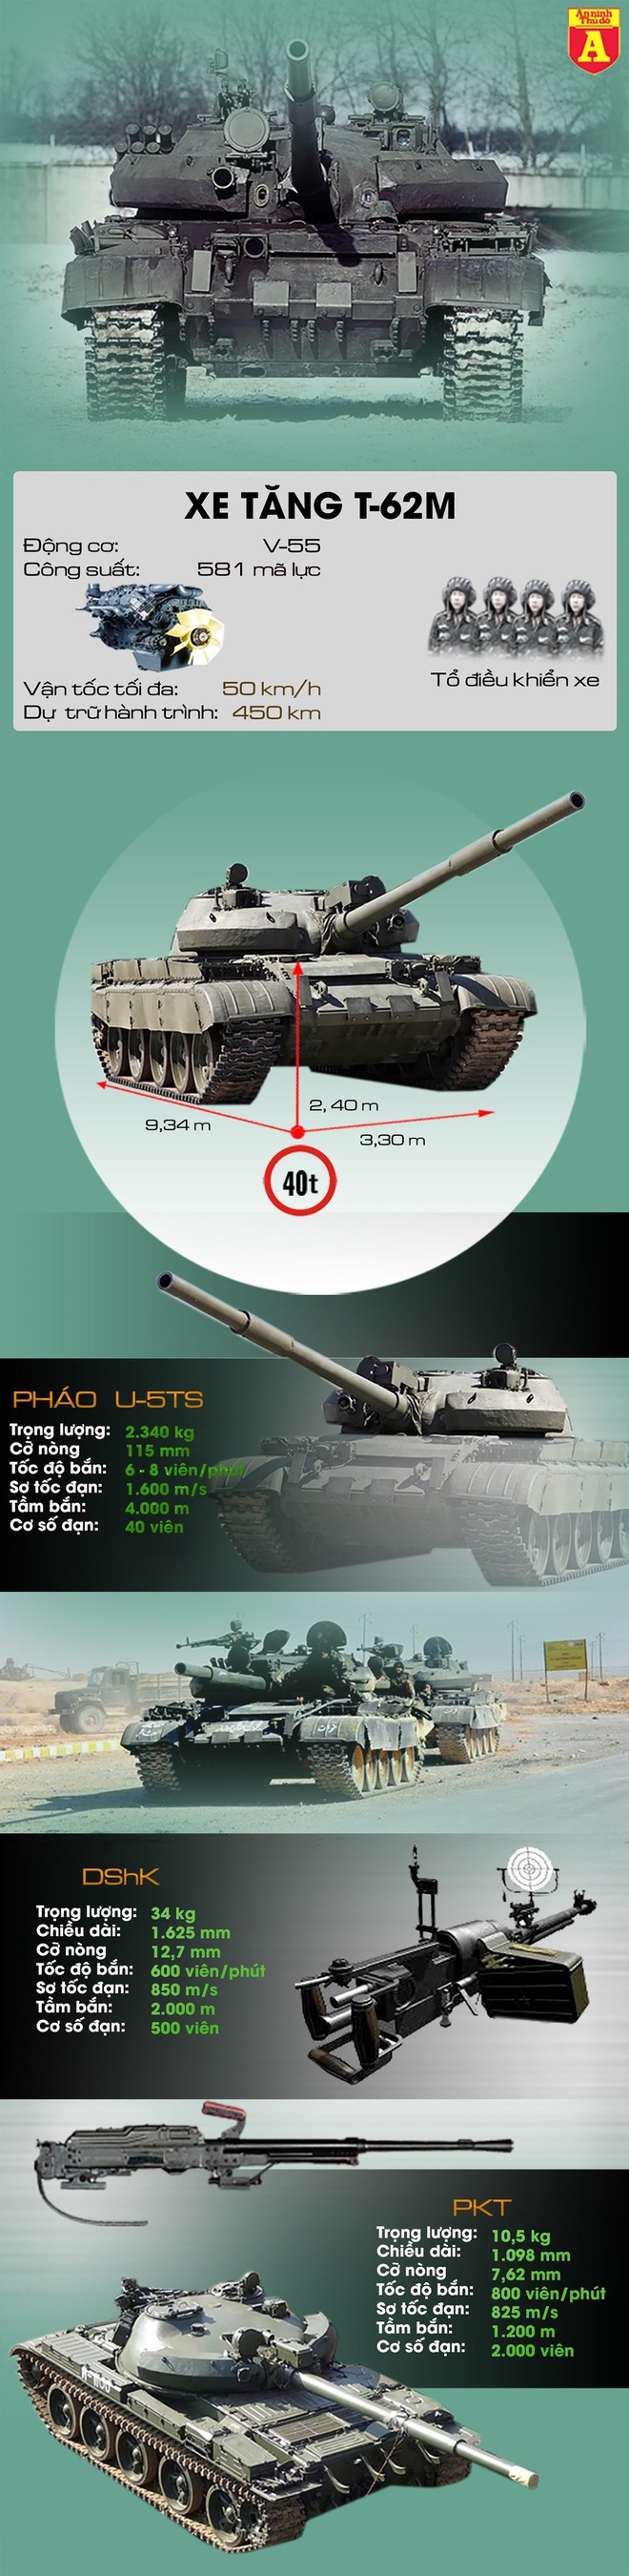 Nga đã cấp tốc chuyển 41 xe tăng cho Syria để chặn Thổ Nhĩ Kỳ? - Ảnh 1.